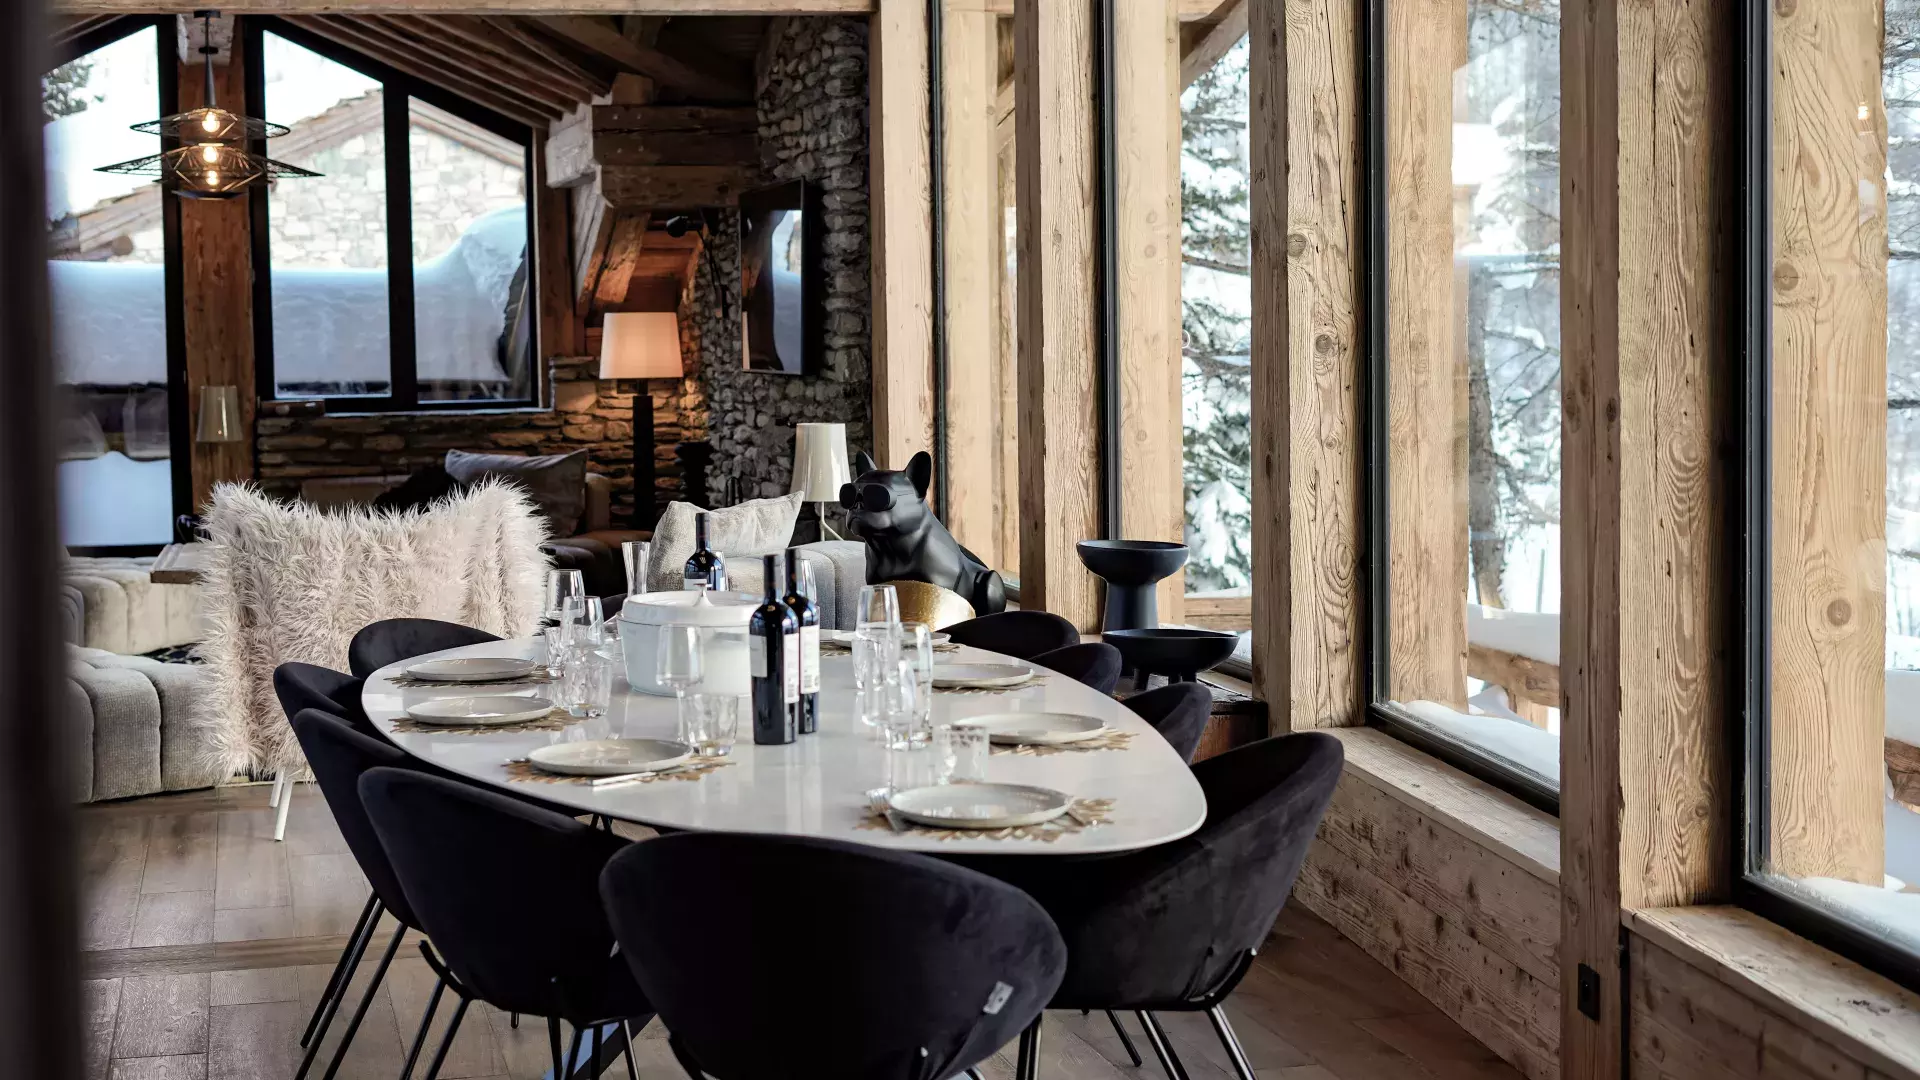 Chalet Le Crêt - Location chalets Covarel - Val d'Isère Alpes - France – Salle à manger